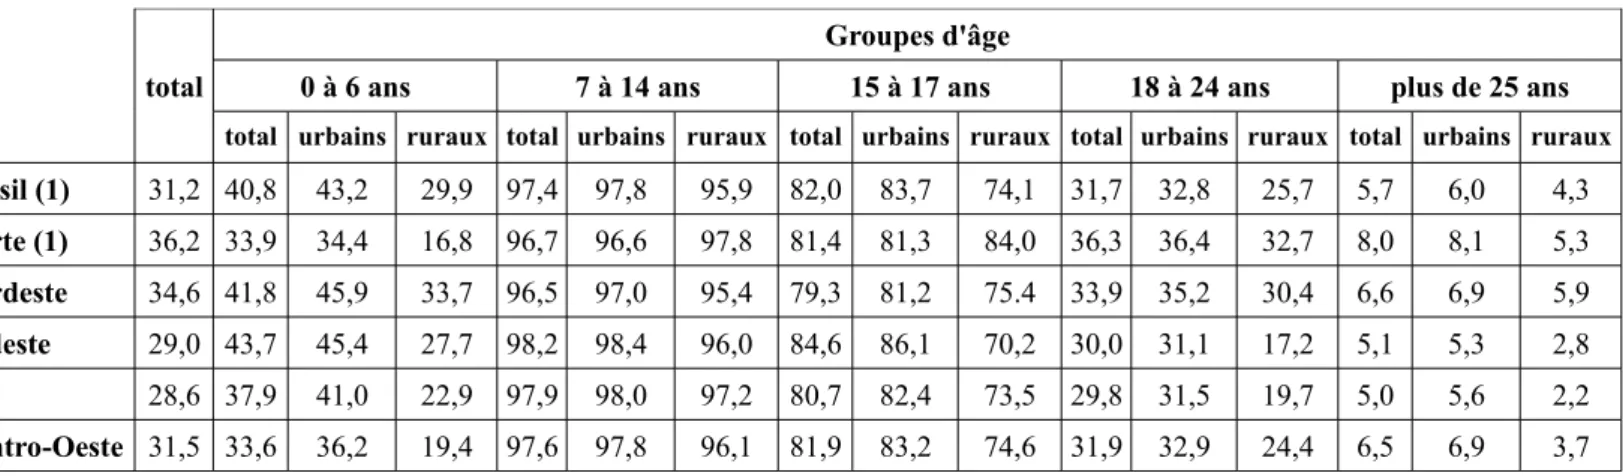 Tableau 2.7 : Taux de scolarisation (%) par régions*, groupes d'âge et zone d'habitation en 2005